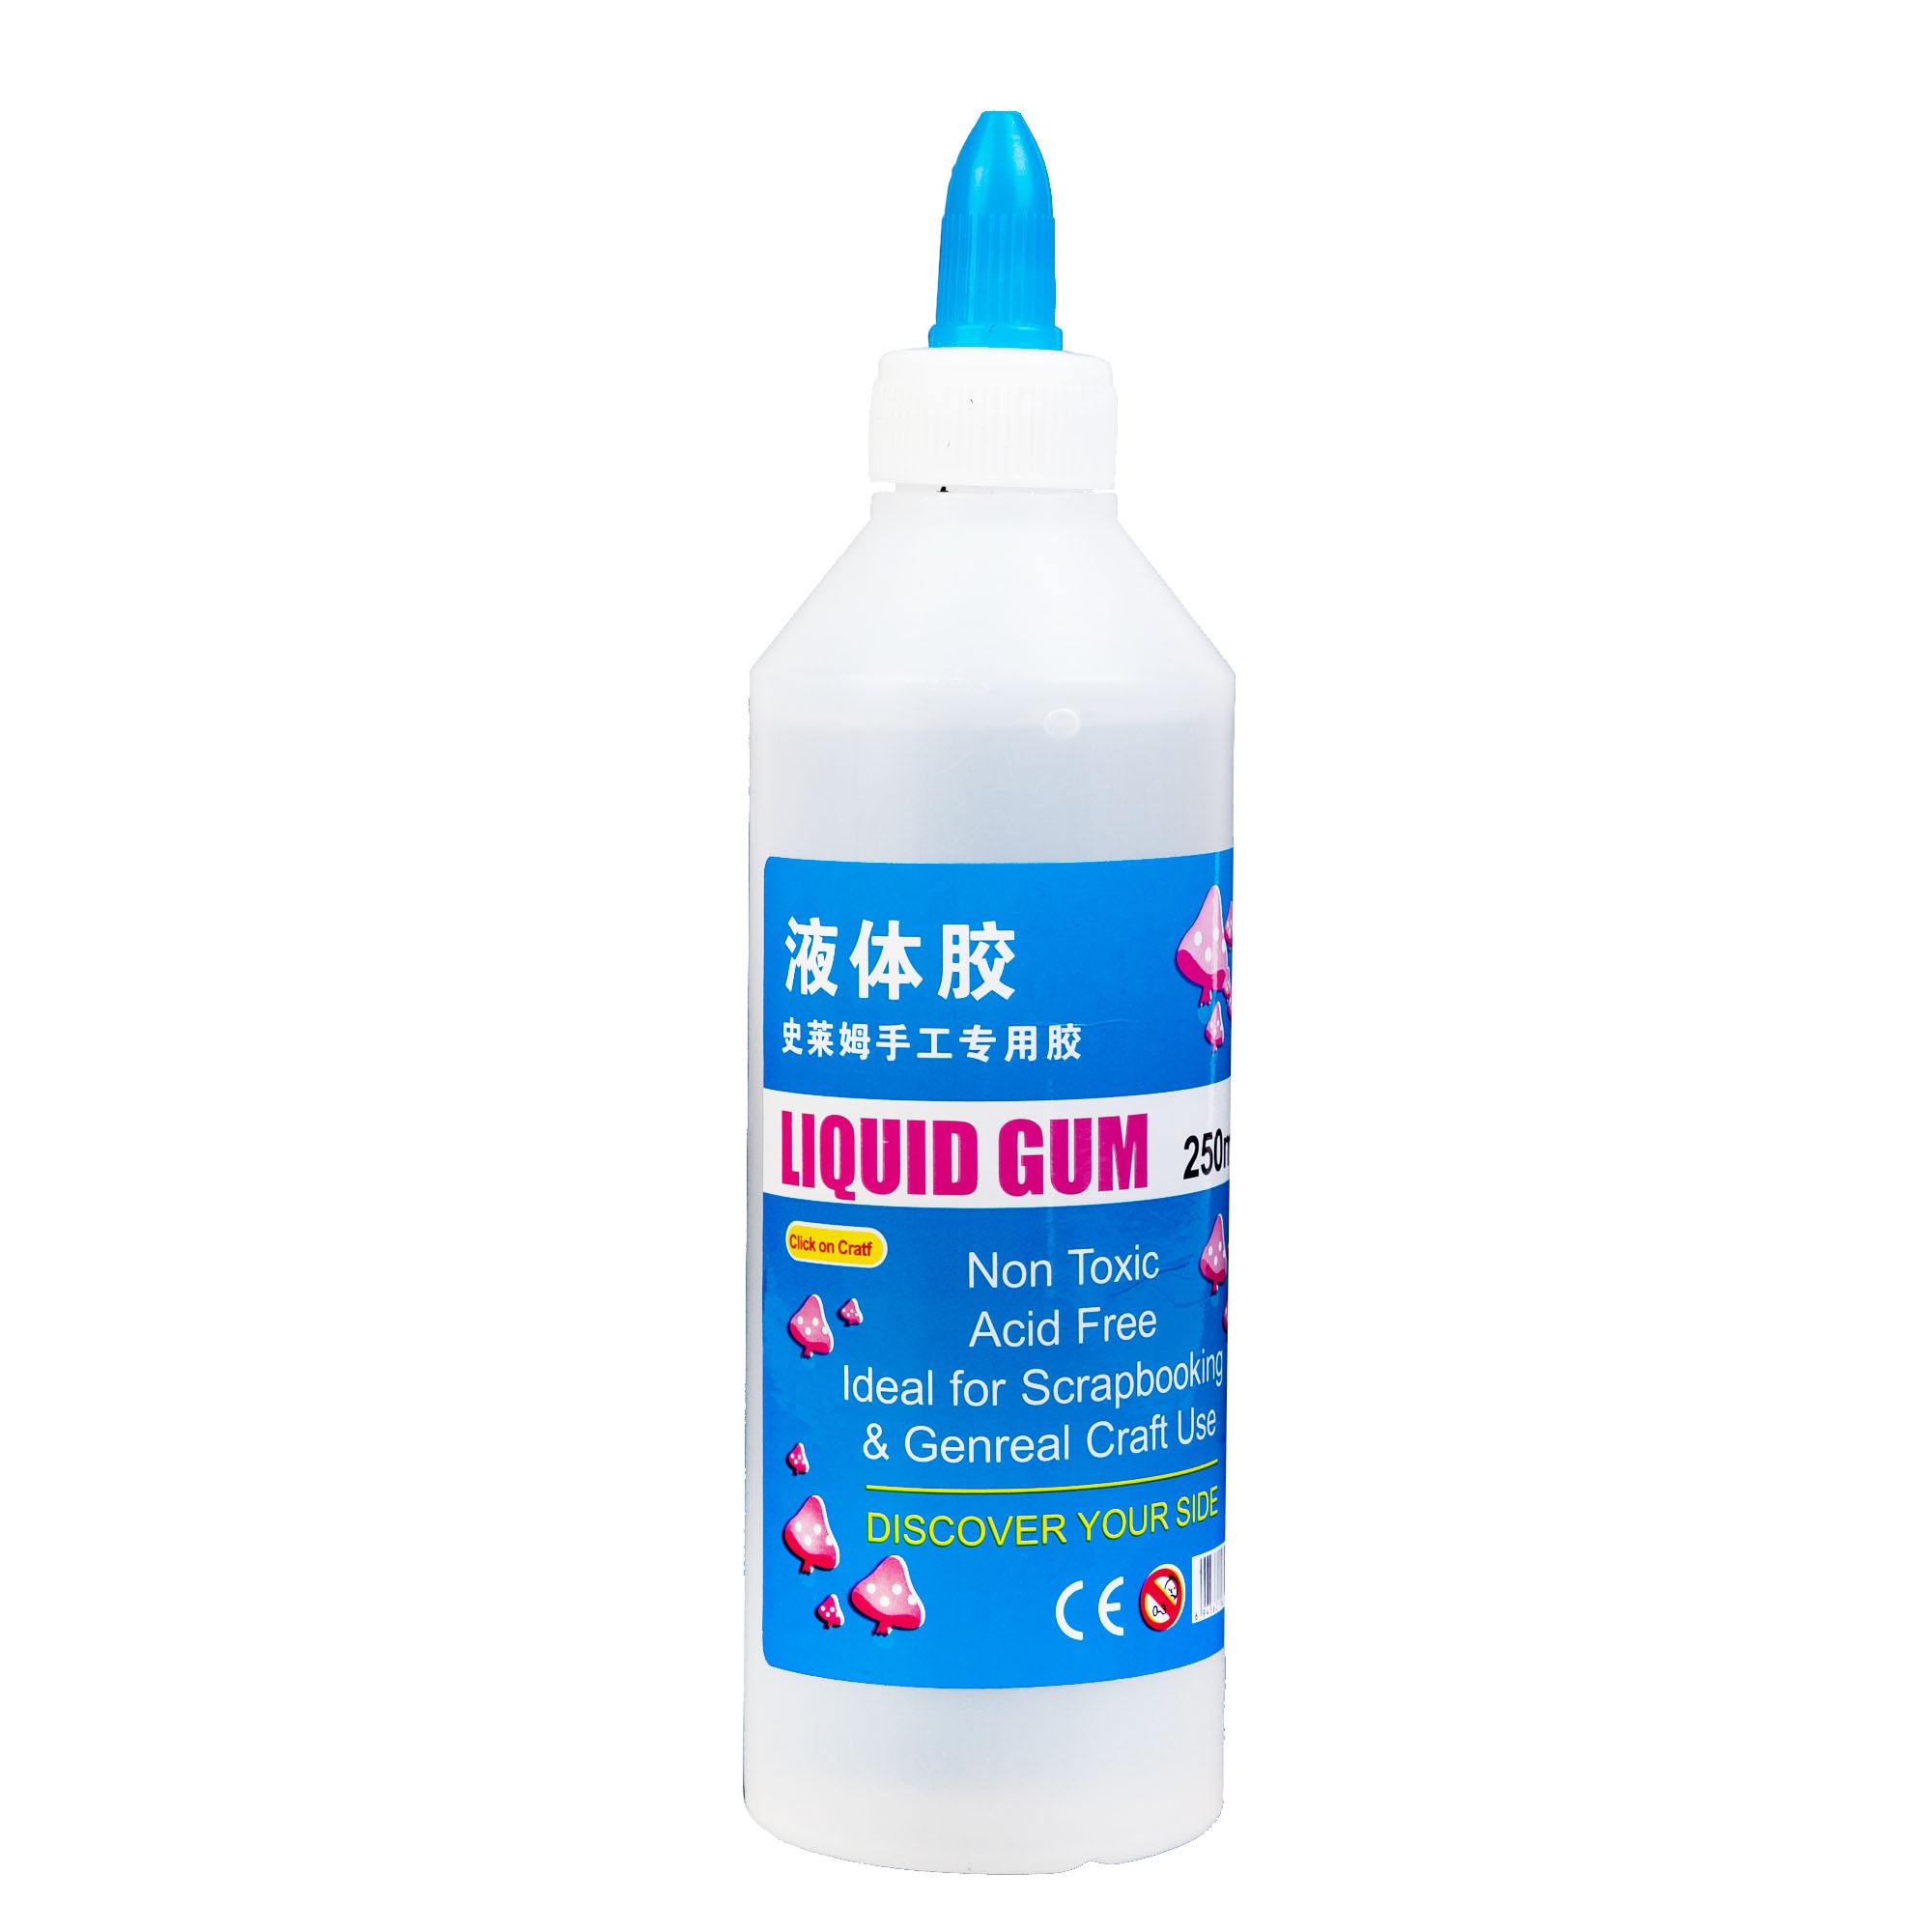 Silicone Liquid Glue